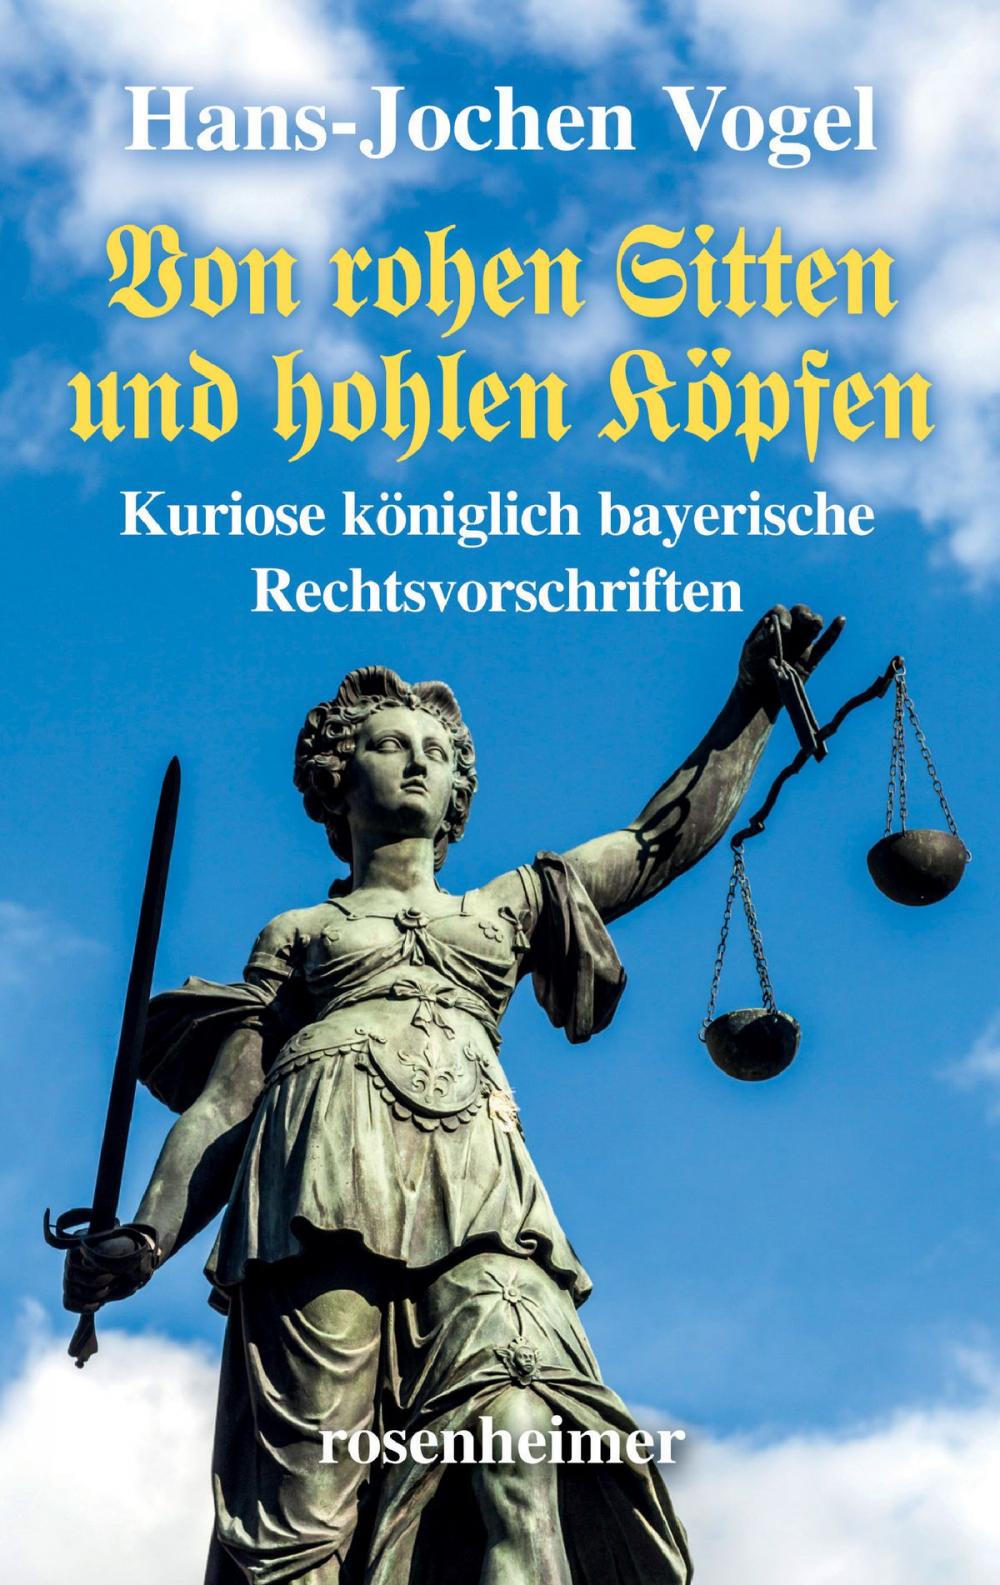 Big bigCover of Von rohen Sitten und hohlen Köpfen - Kuriose königlich bayerische Rechtsvorschriften